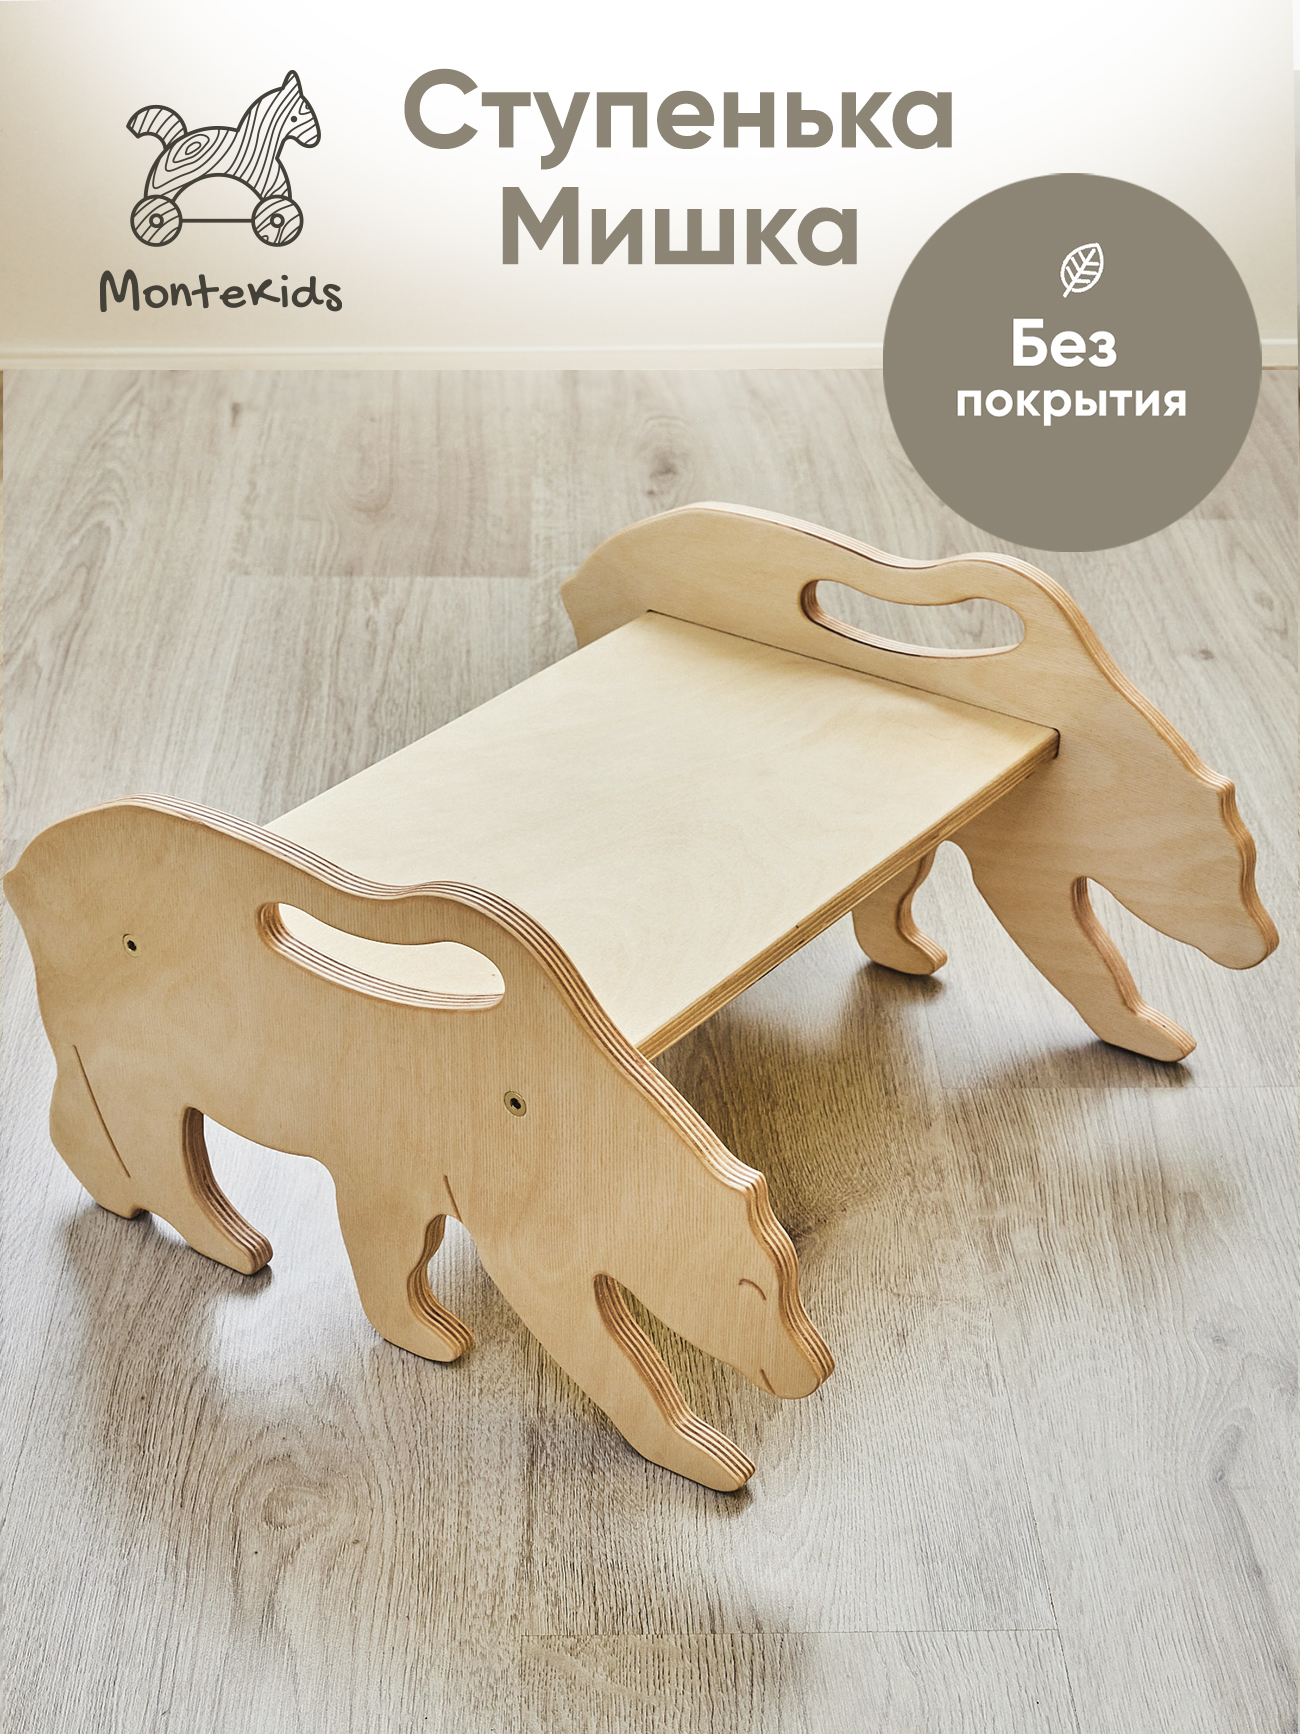 Скамейка детская Montekids Медведь, ступенька, подставка для ног (без покрытия)